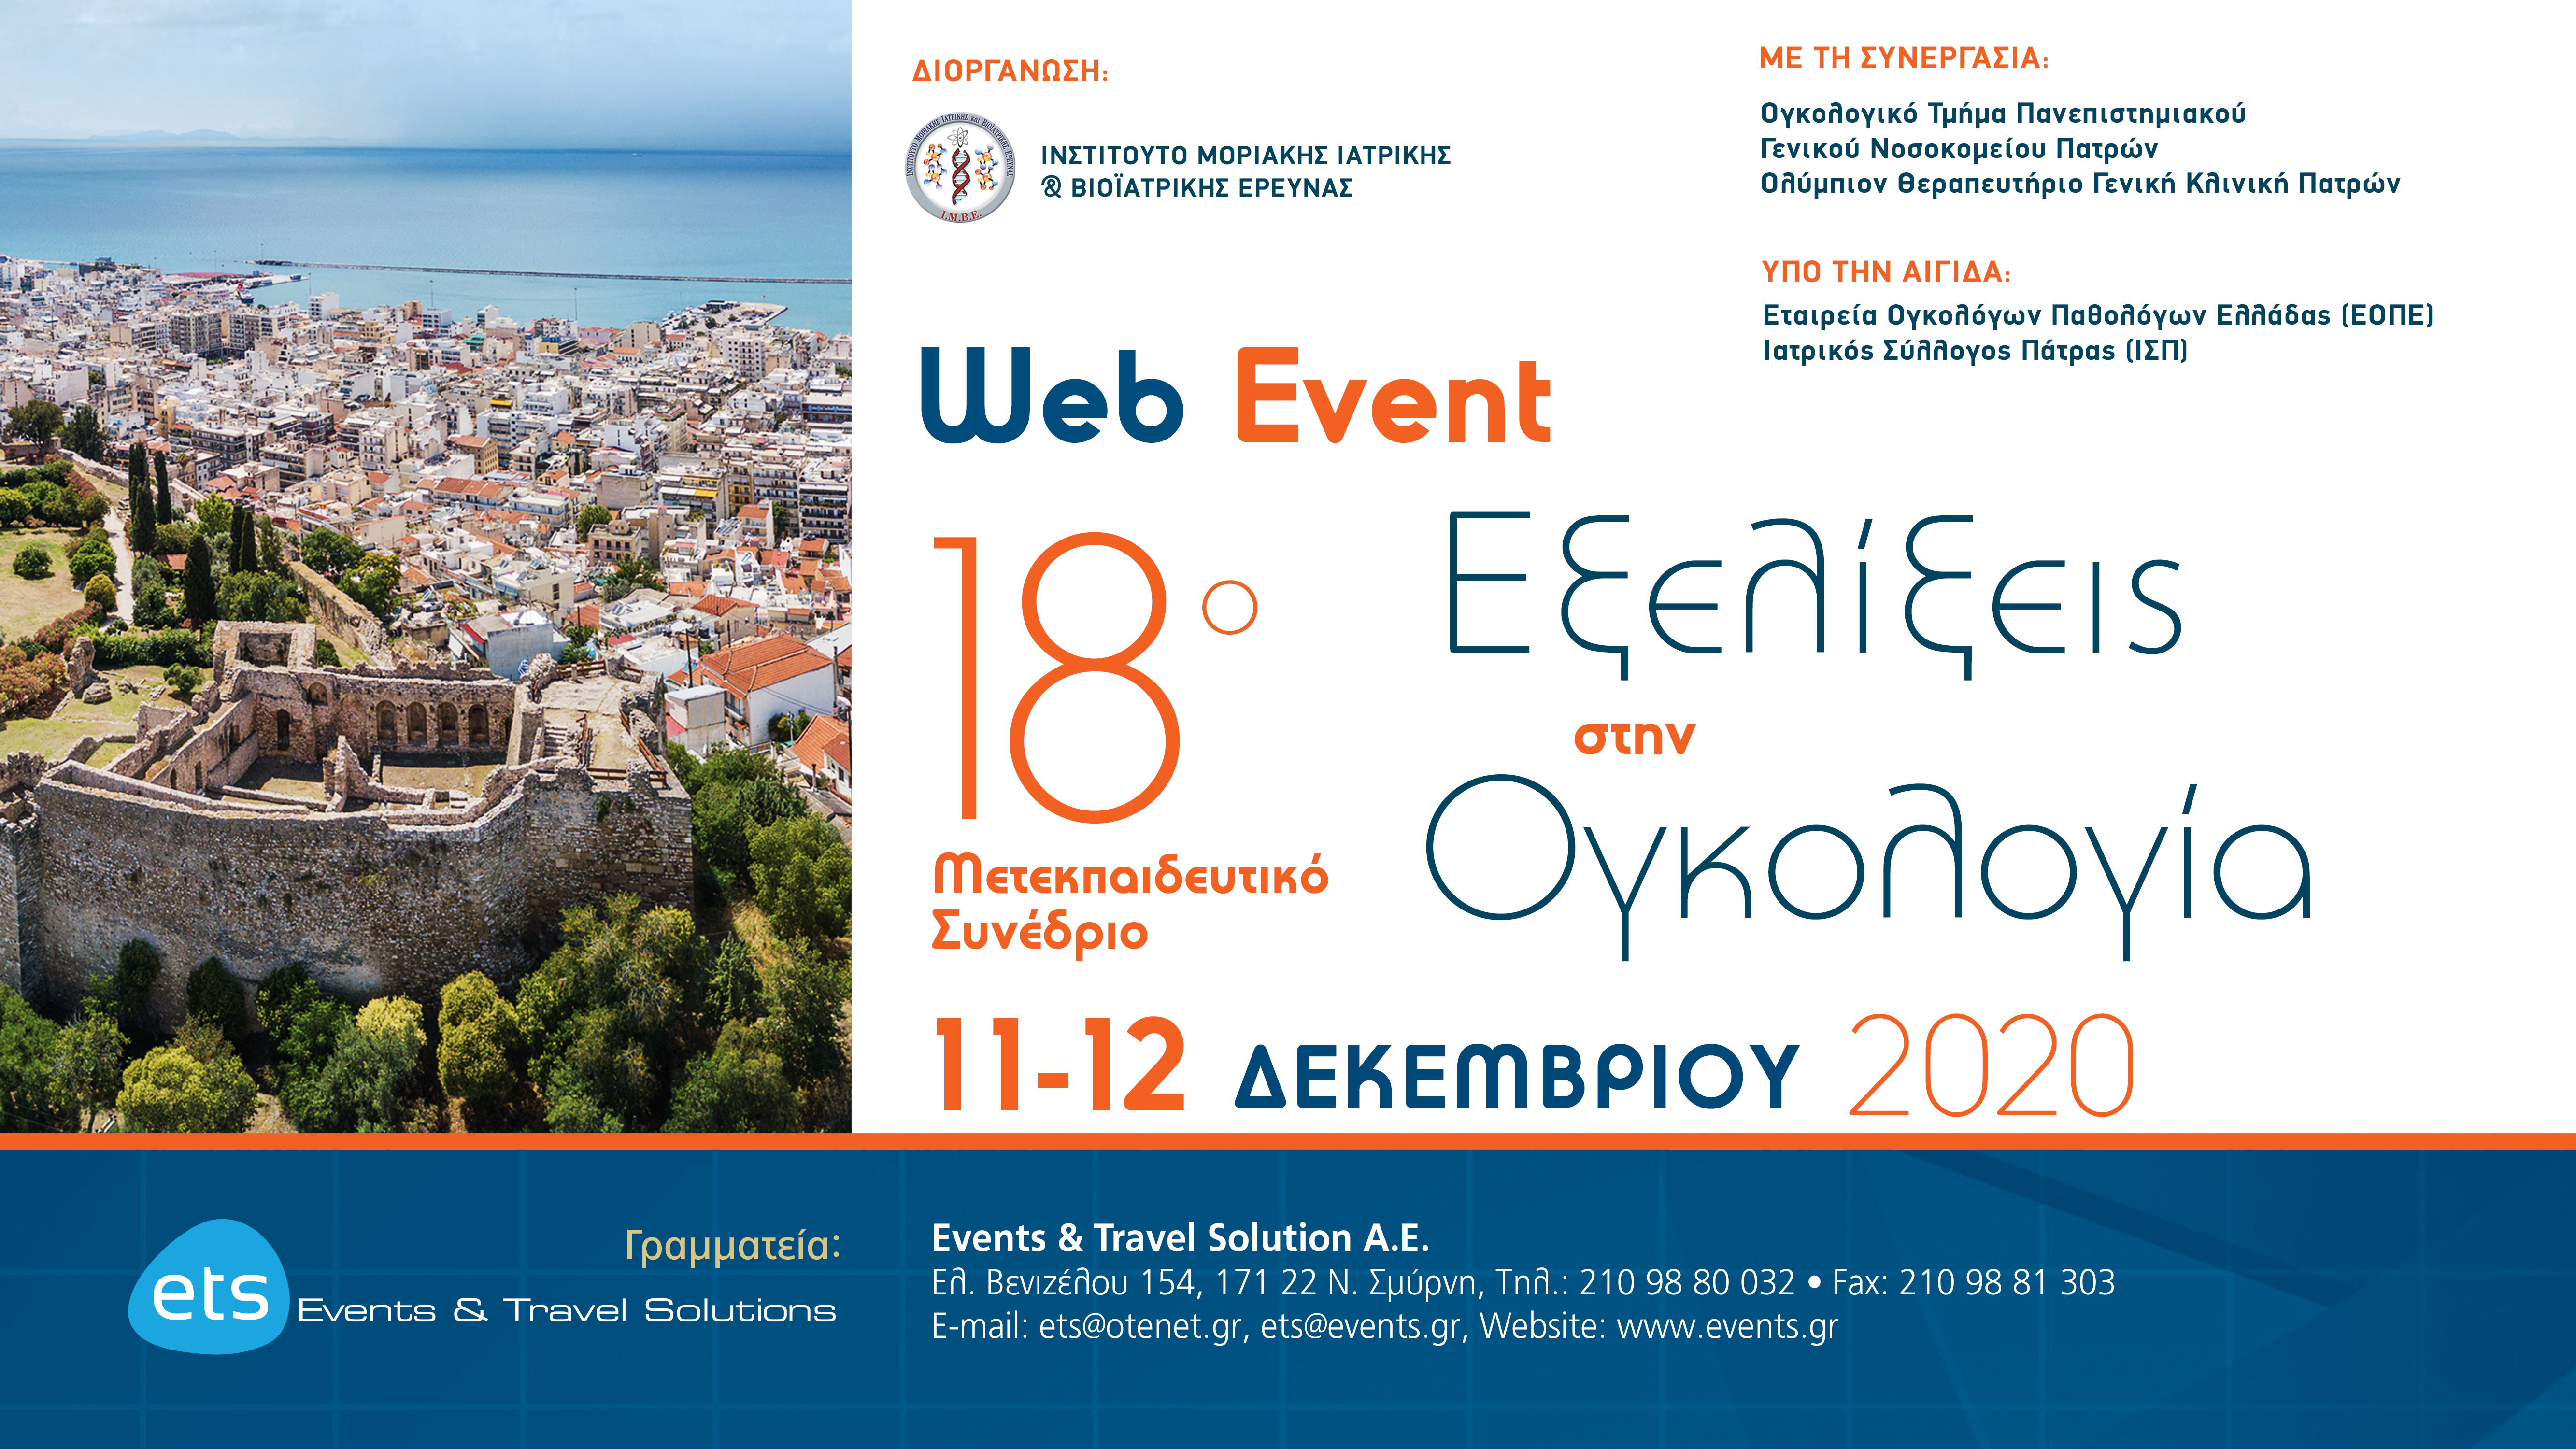 Web Event - 18o Μετεκπαιδευτικό Συνέδριο Εξελίξεις στην Ογκολογία